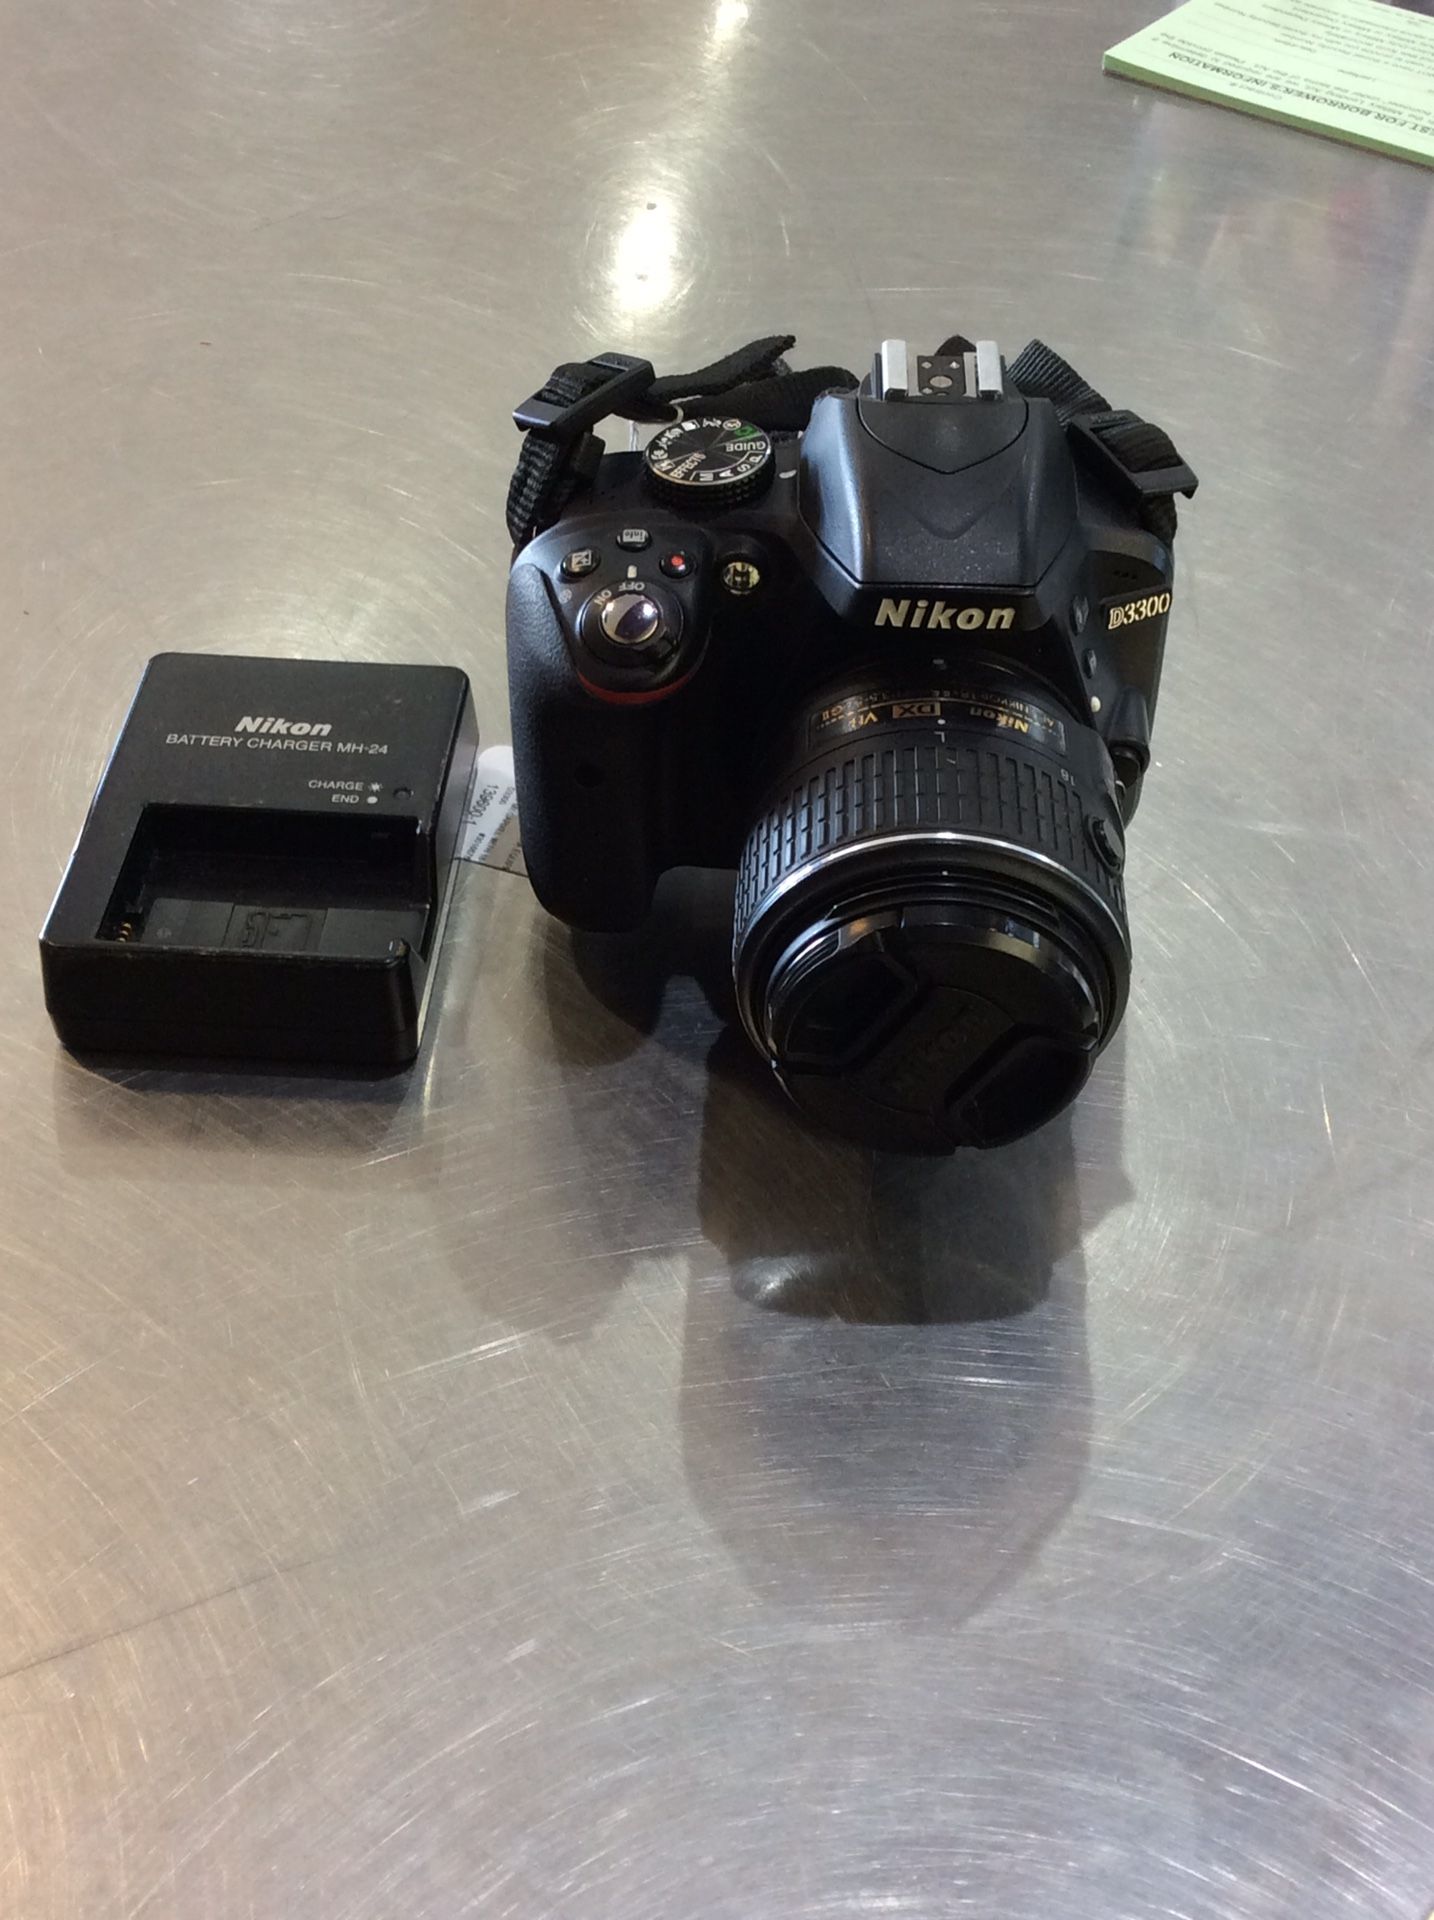 Nikon model D3300 24.2 megapixel digital camera w/lens